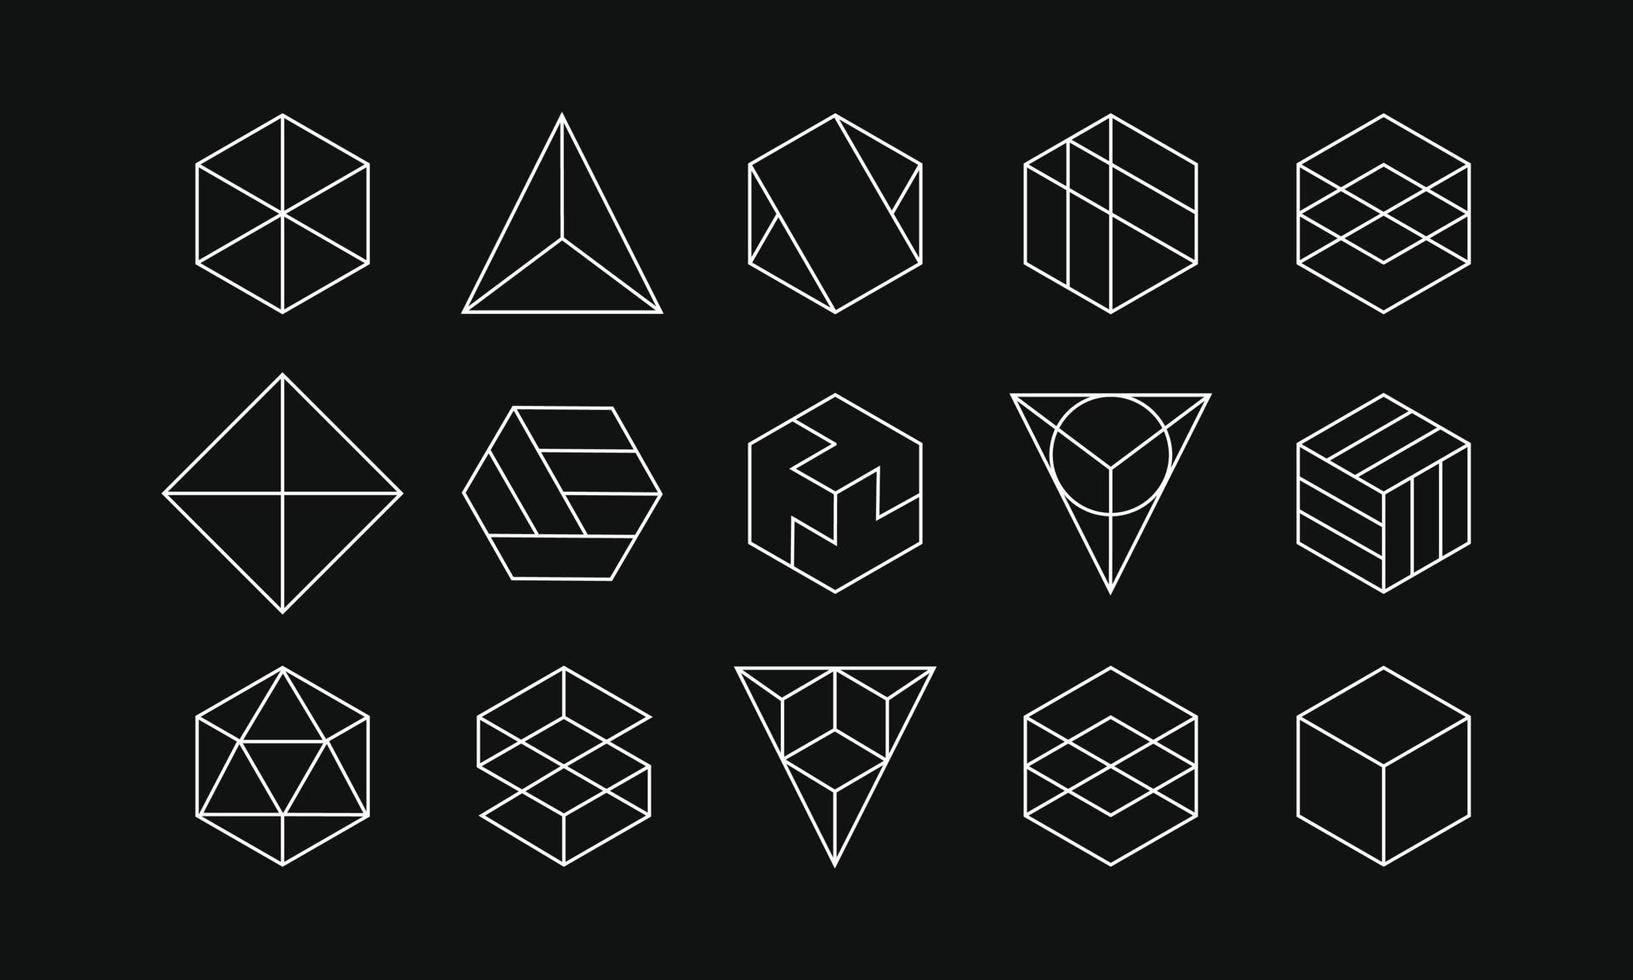 signe géométrique de ligne abstraite en formes hexagonales et triangulaires. collection minimale de logotypes. ornement simple pour la texture et le motif. vecteur